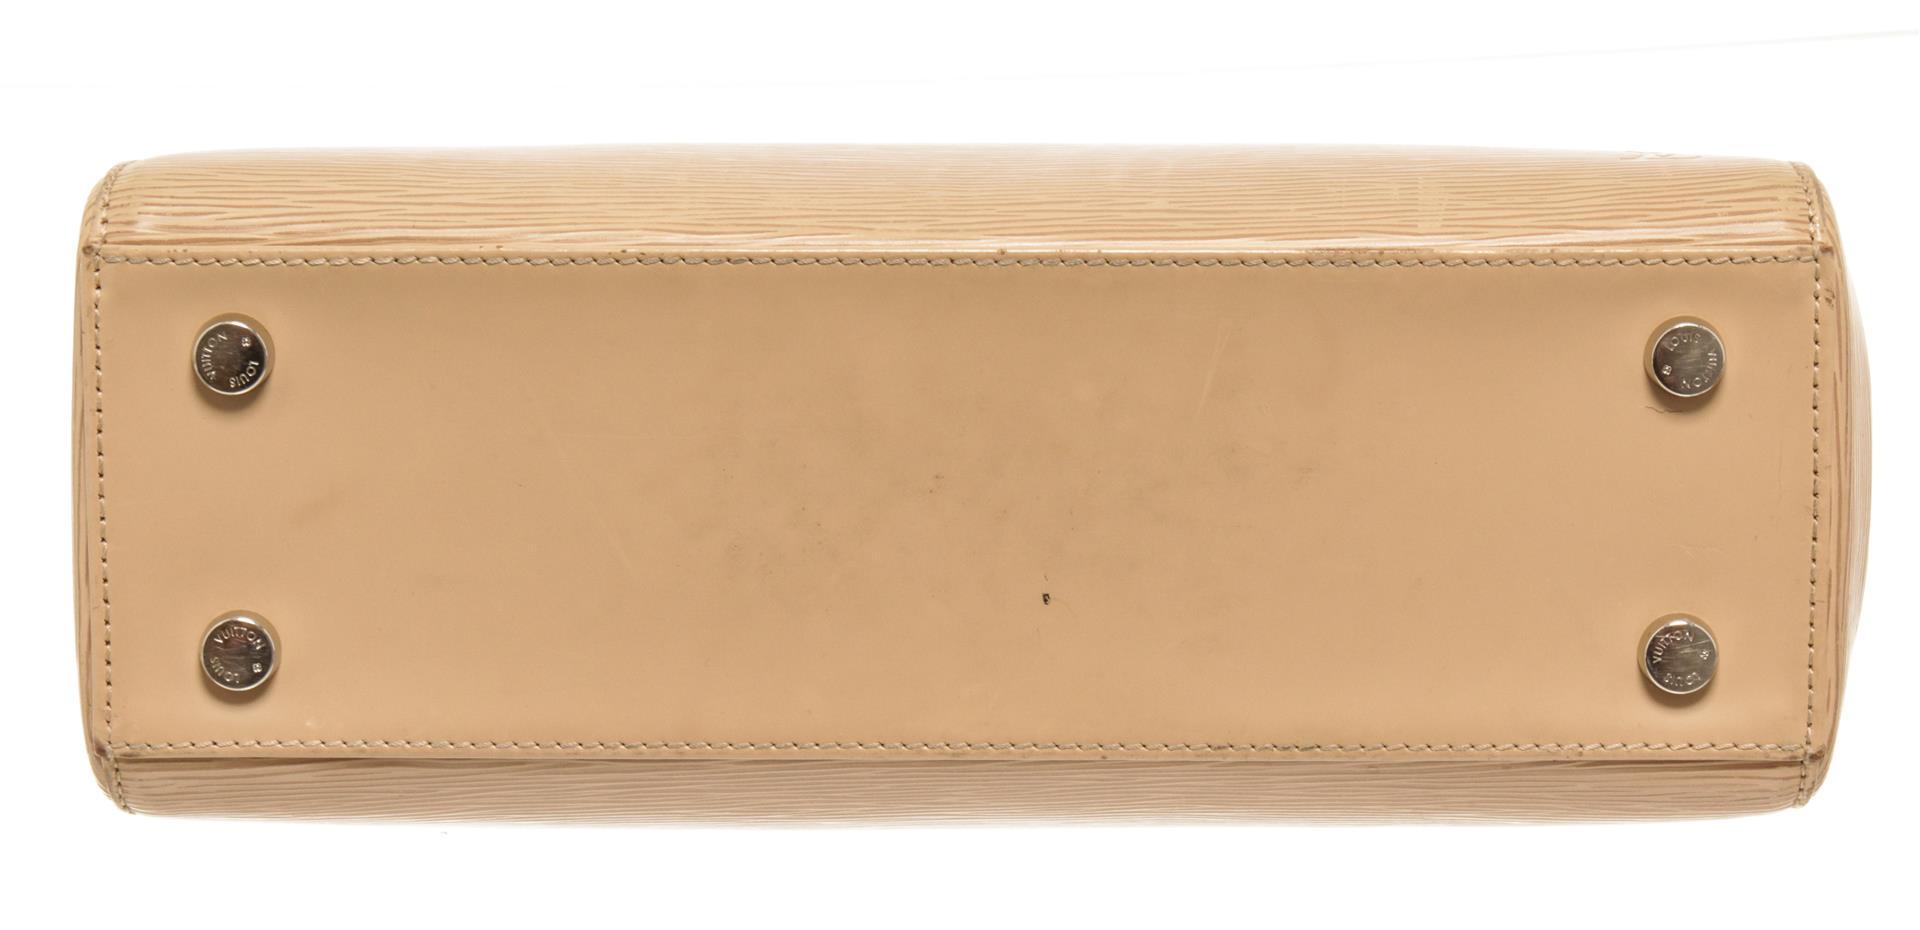 Louis Vuitton Beige Epi Leather Brea MM Satchel Shoulder Bag